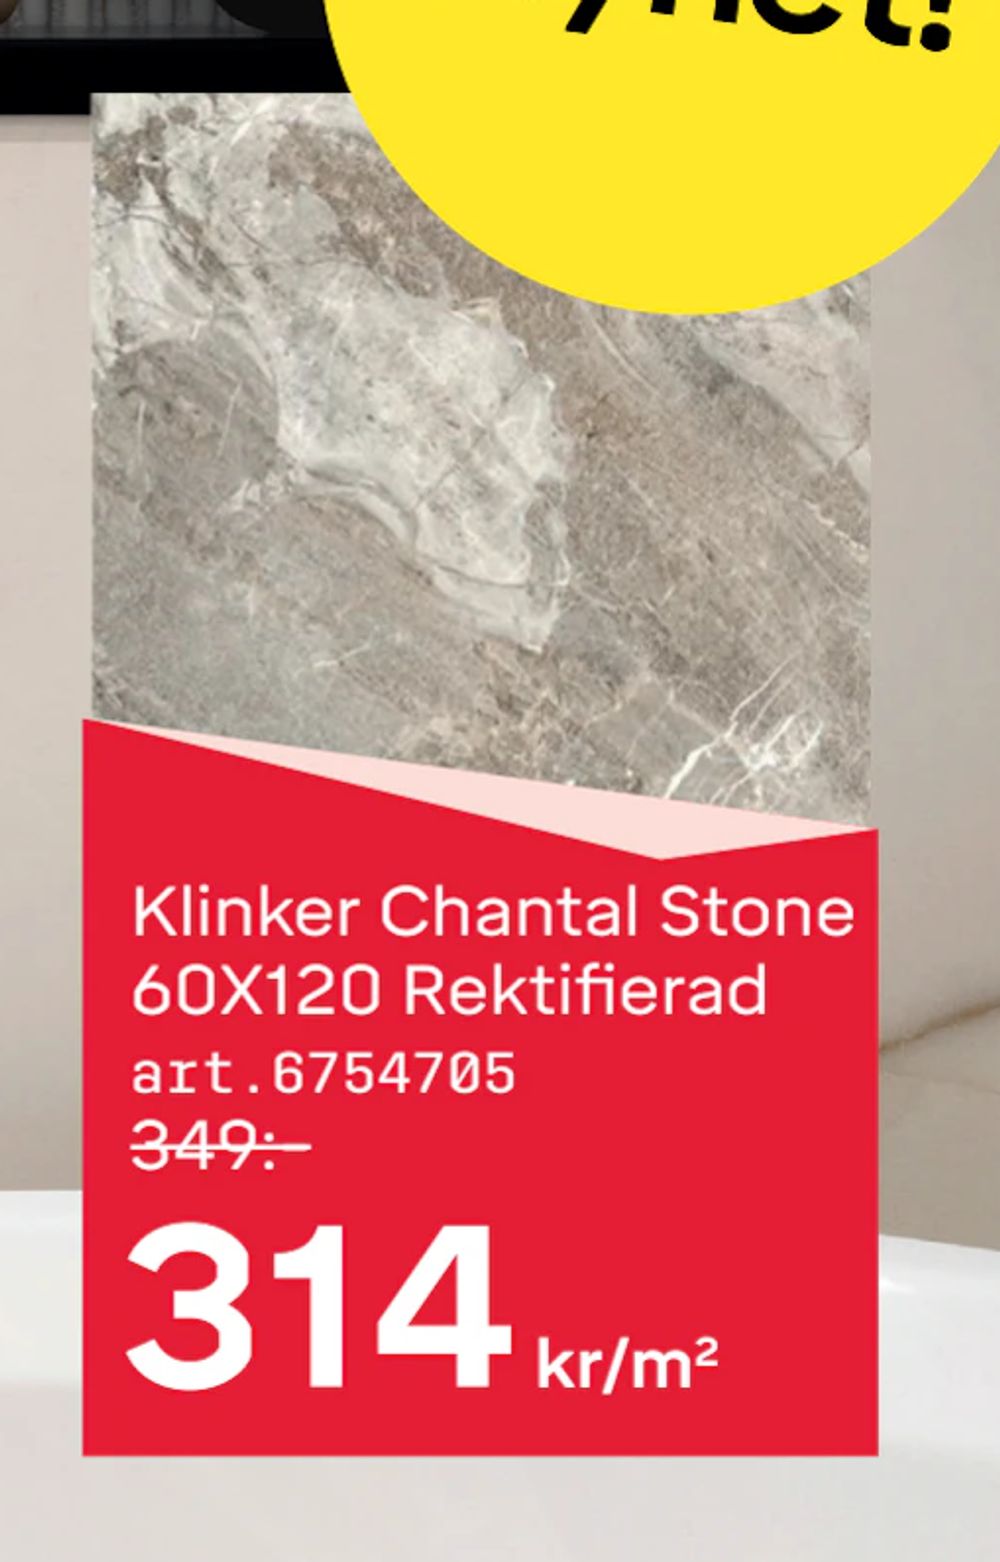 Erbjudanden på Klinker Chantal Stone 60X120 Rektifierad från Byggmax STUDIO för 314 kr